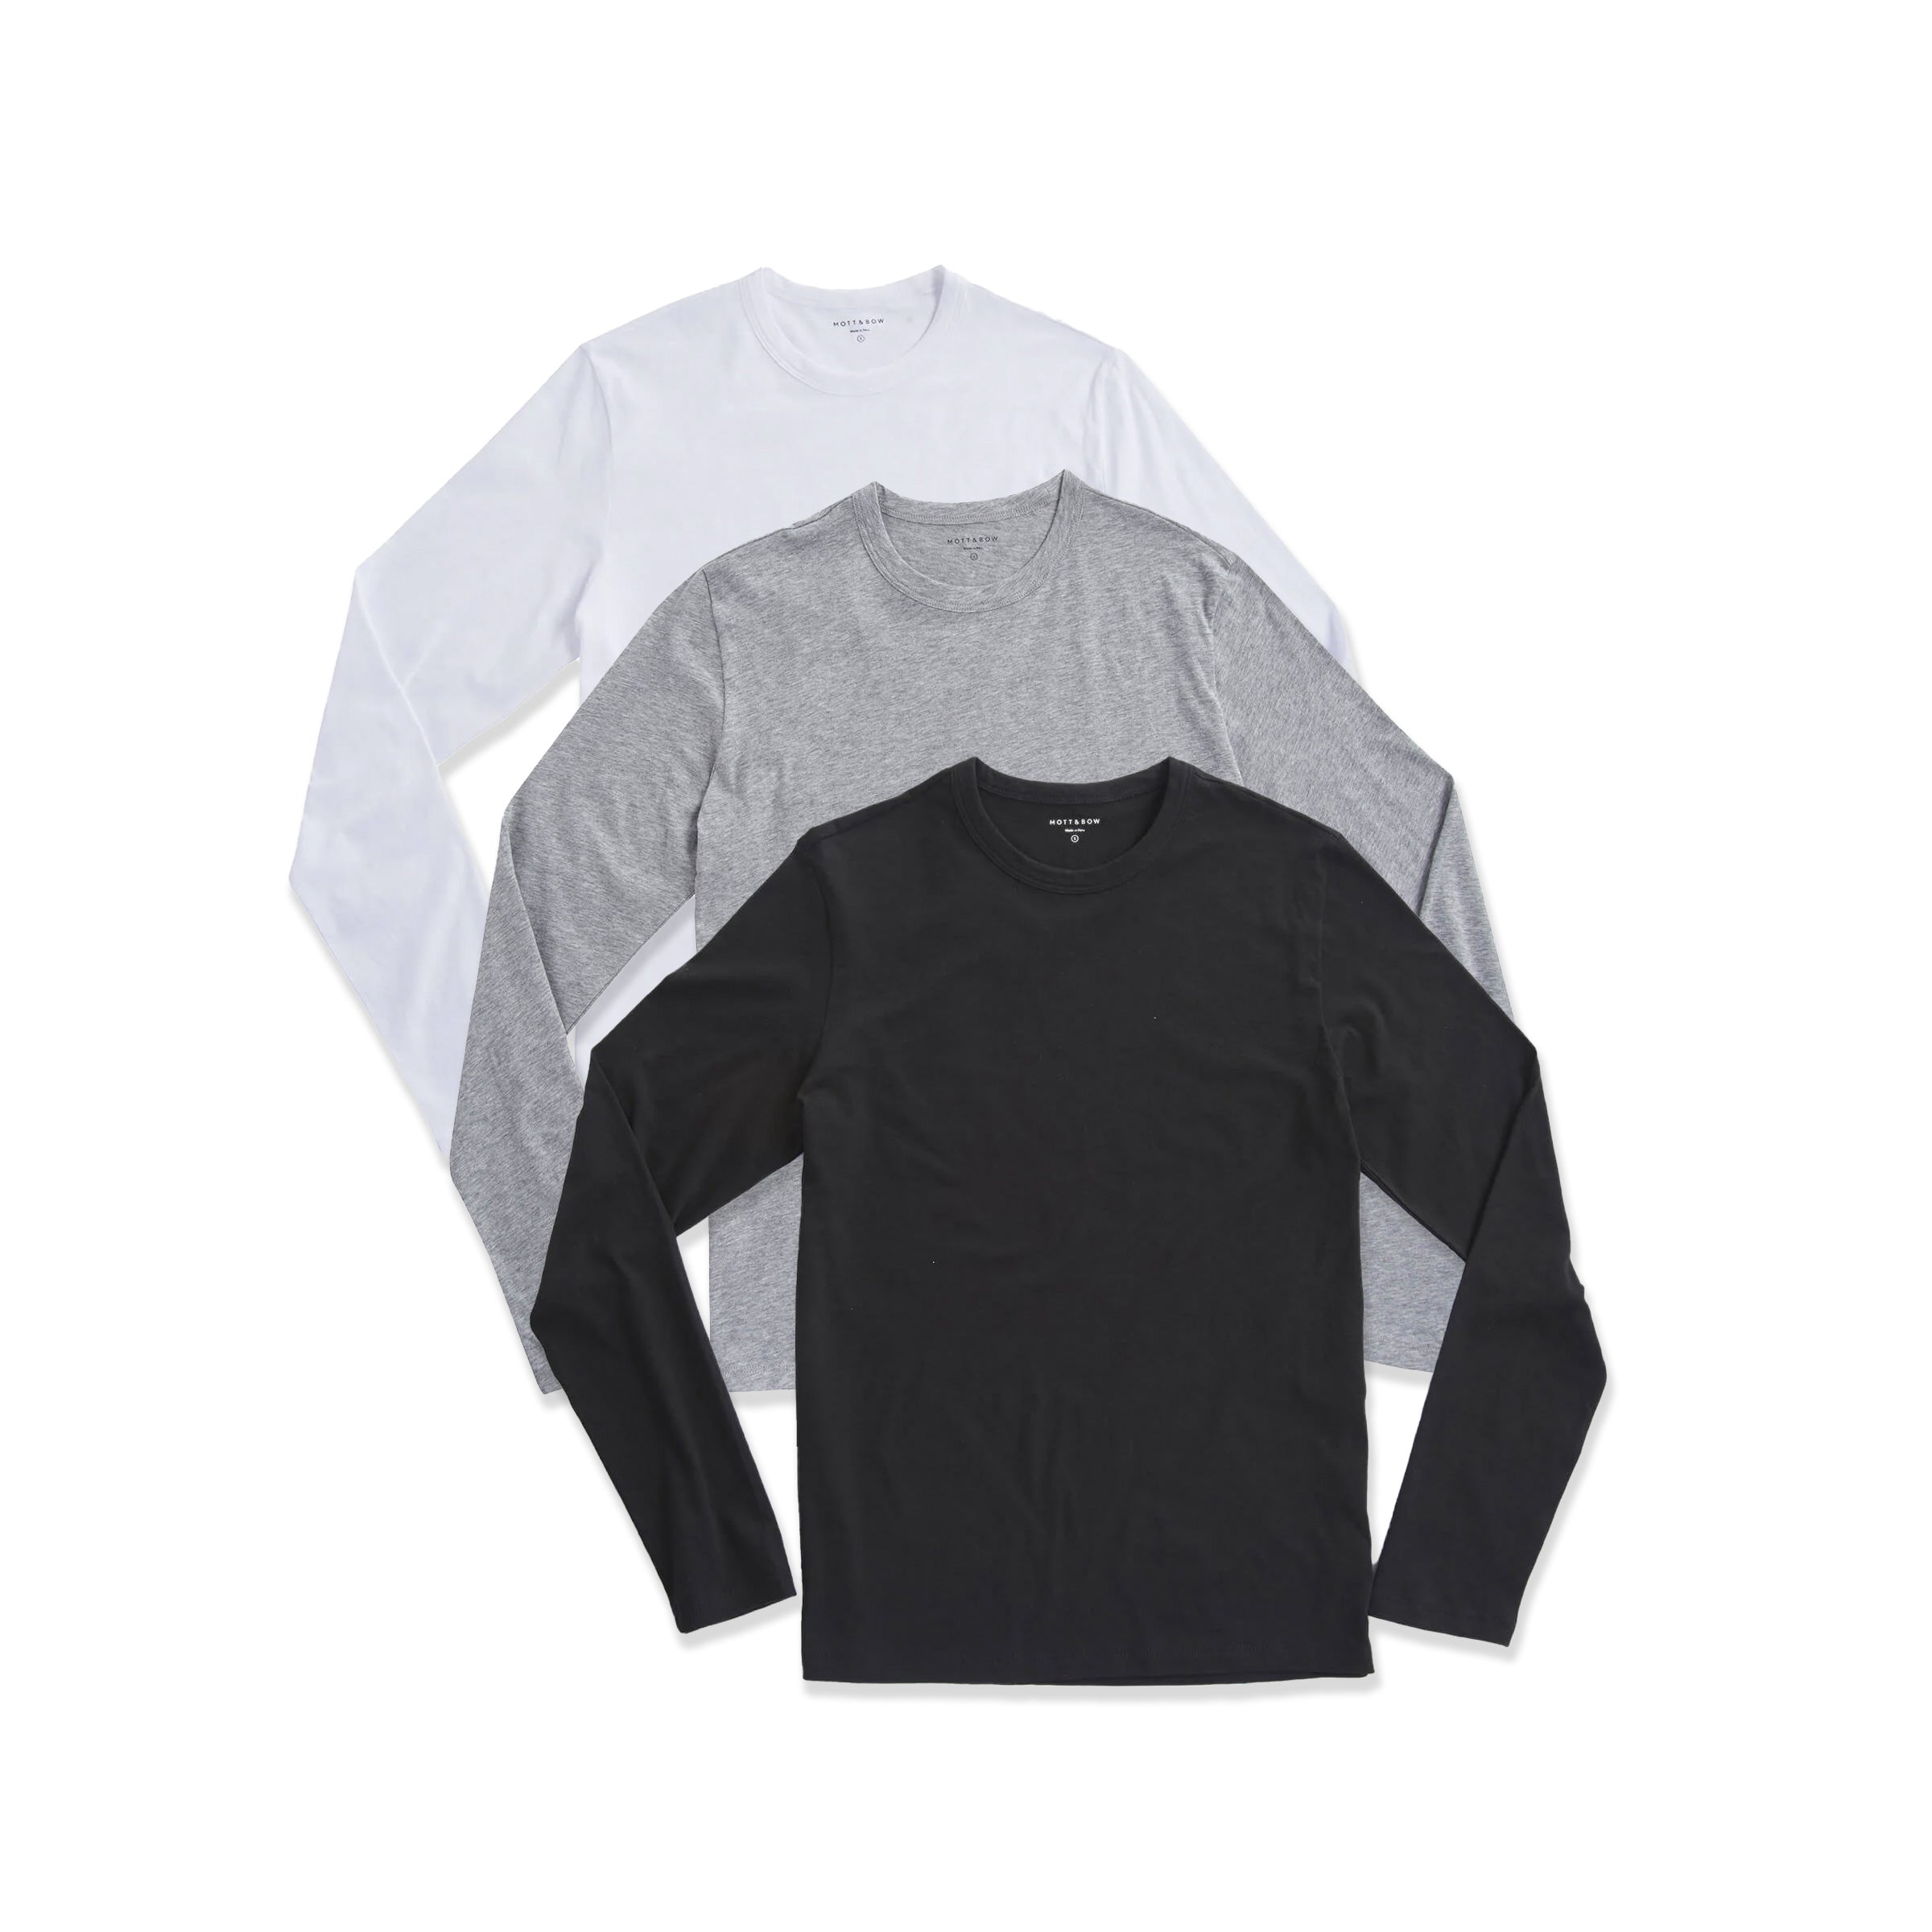 Men wearing Black/Heather Gray/White Long Sleeve Crew Tee Driggs 3-Pack tees